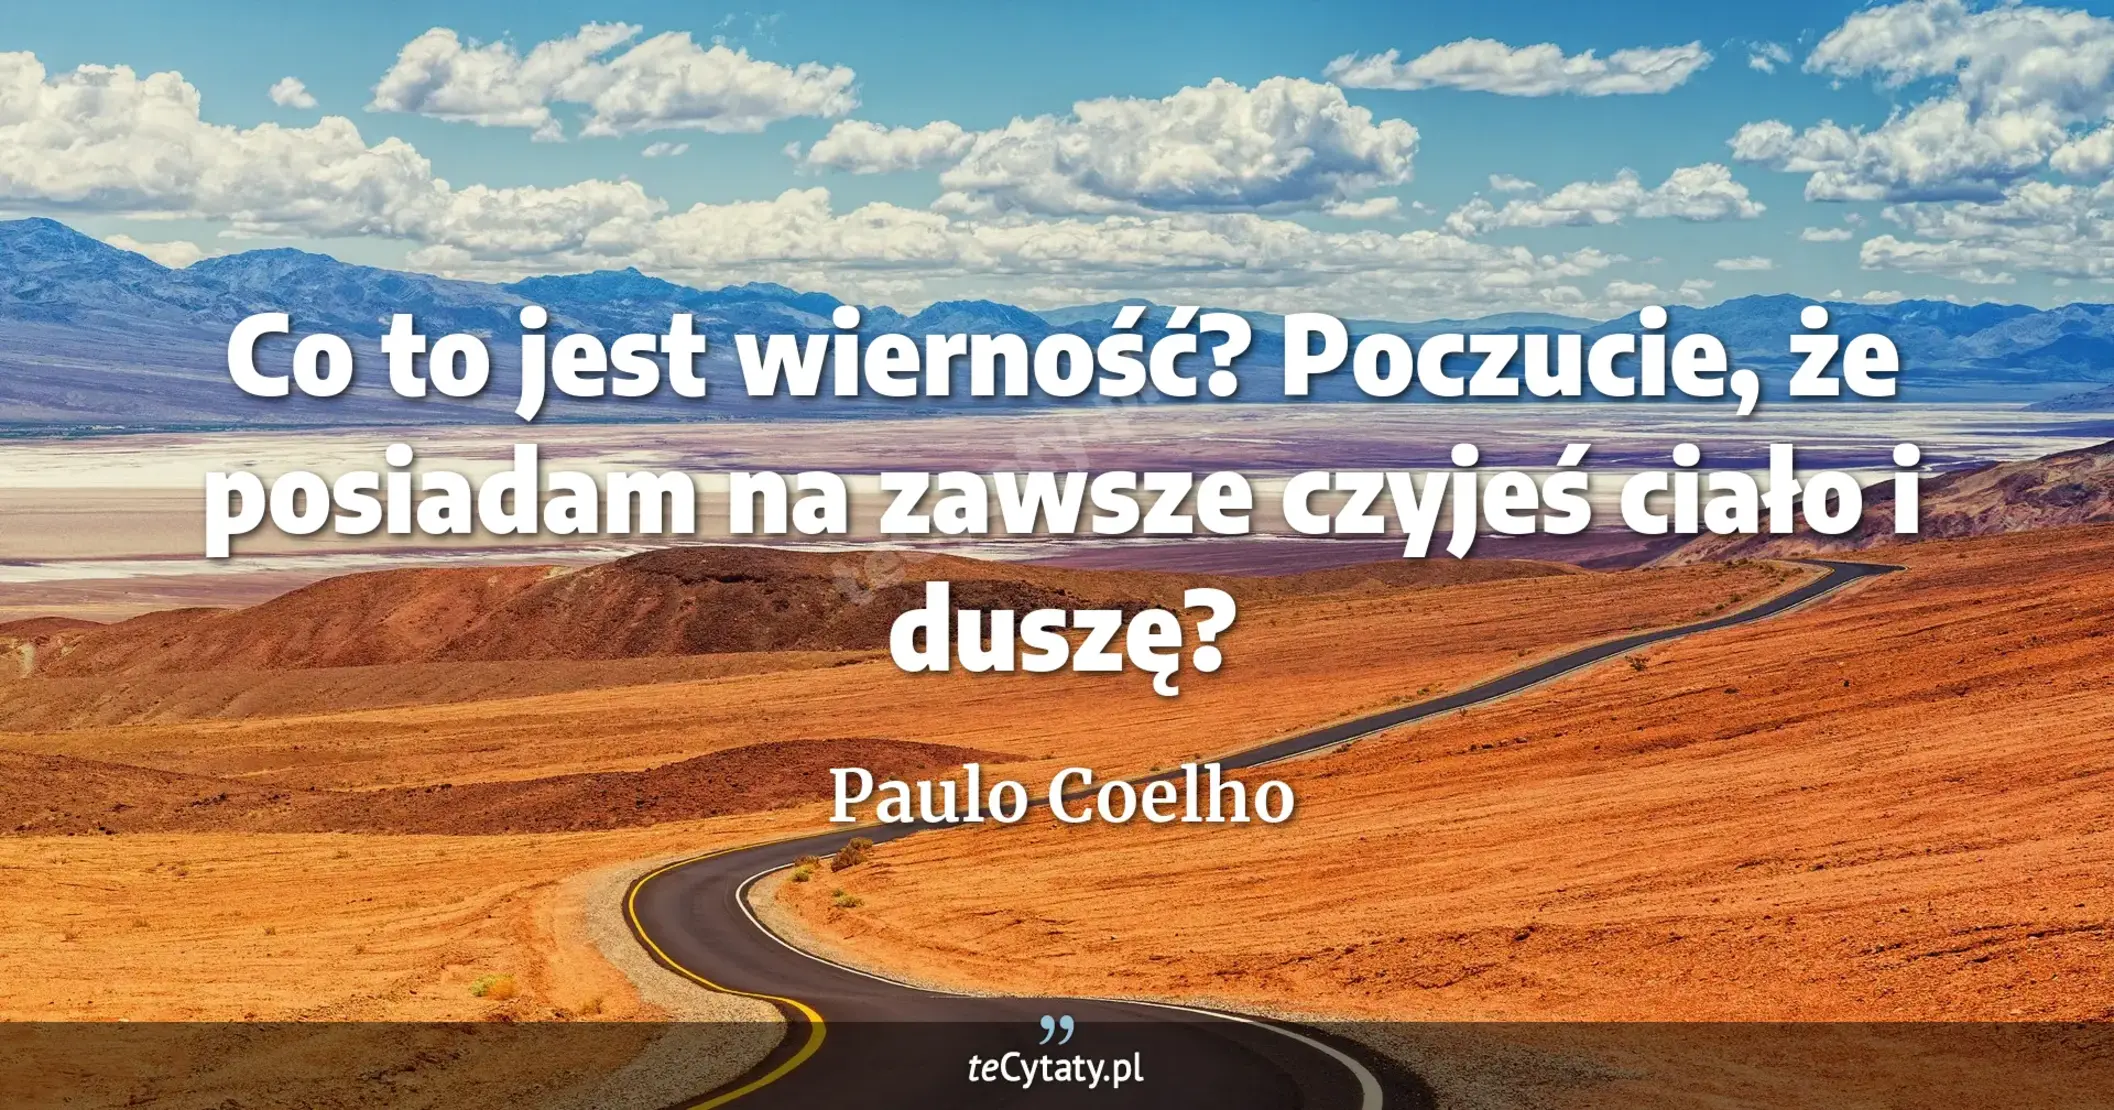 Co to jest wierność? Poczucie, że posiadam na zawsze czyjeś ciało i duszę? - Paulo Coelho